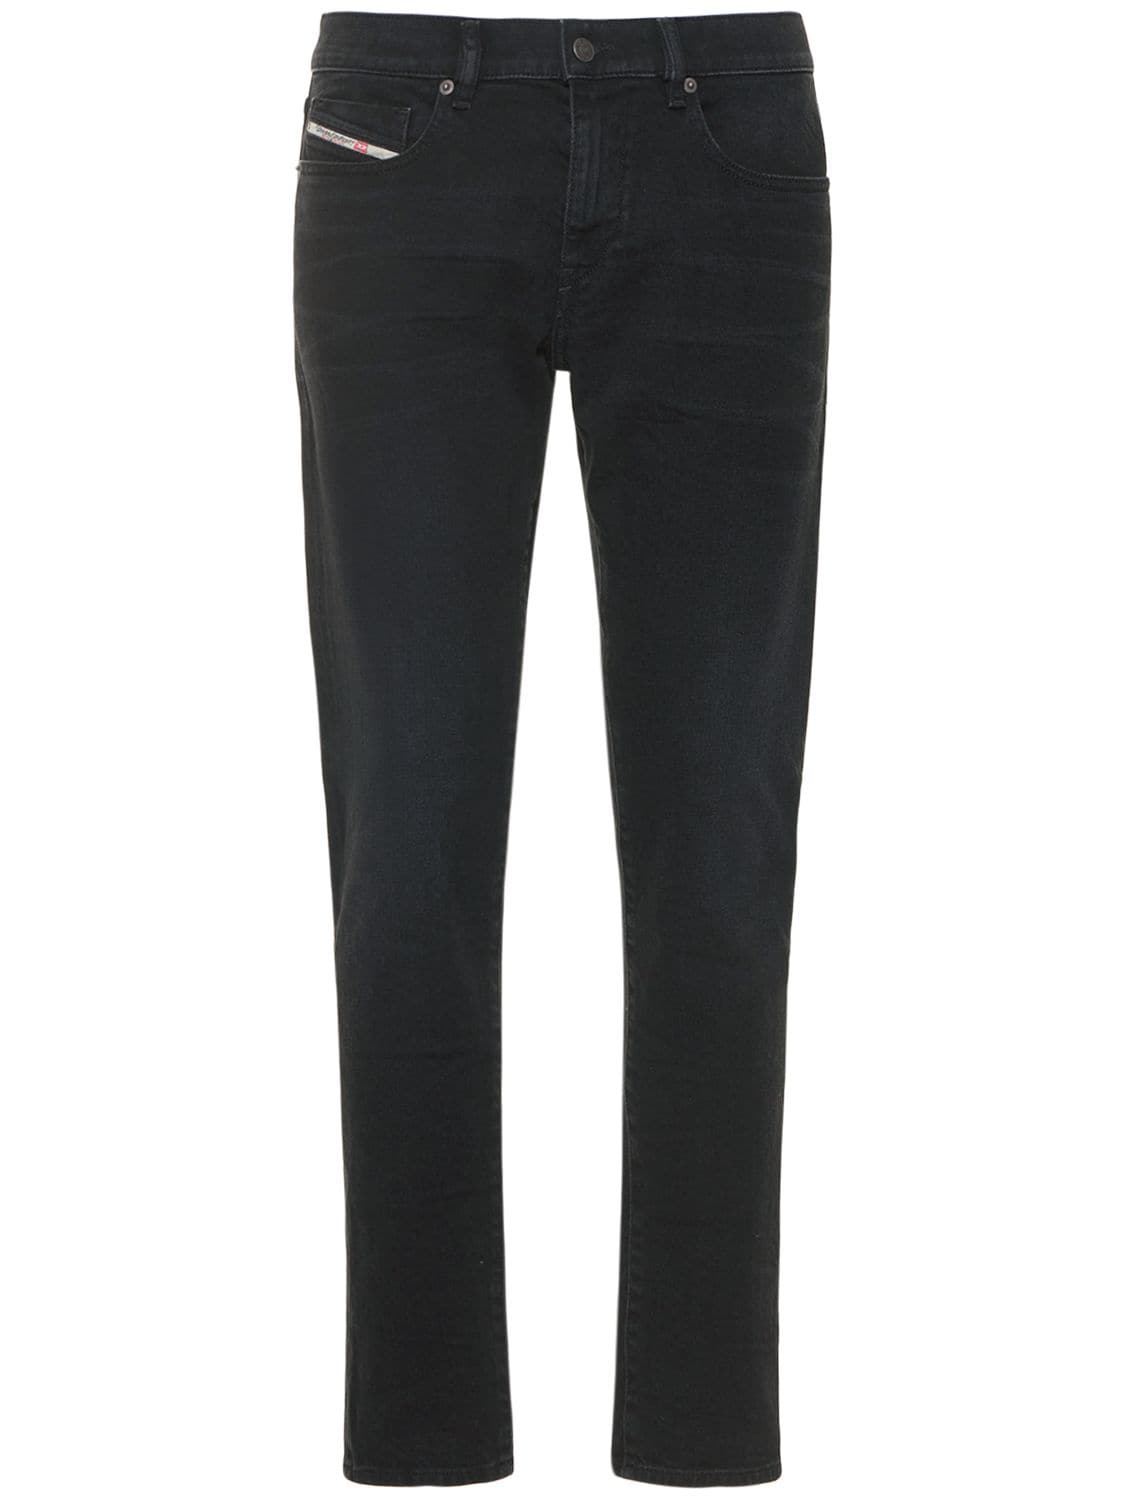 Jeans Slim Fit D-strukt In Denim Di Cotone 16.4cm - DIESEL - Modalova